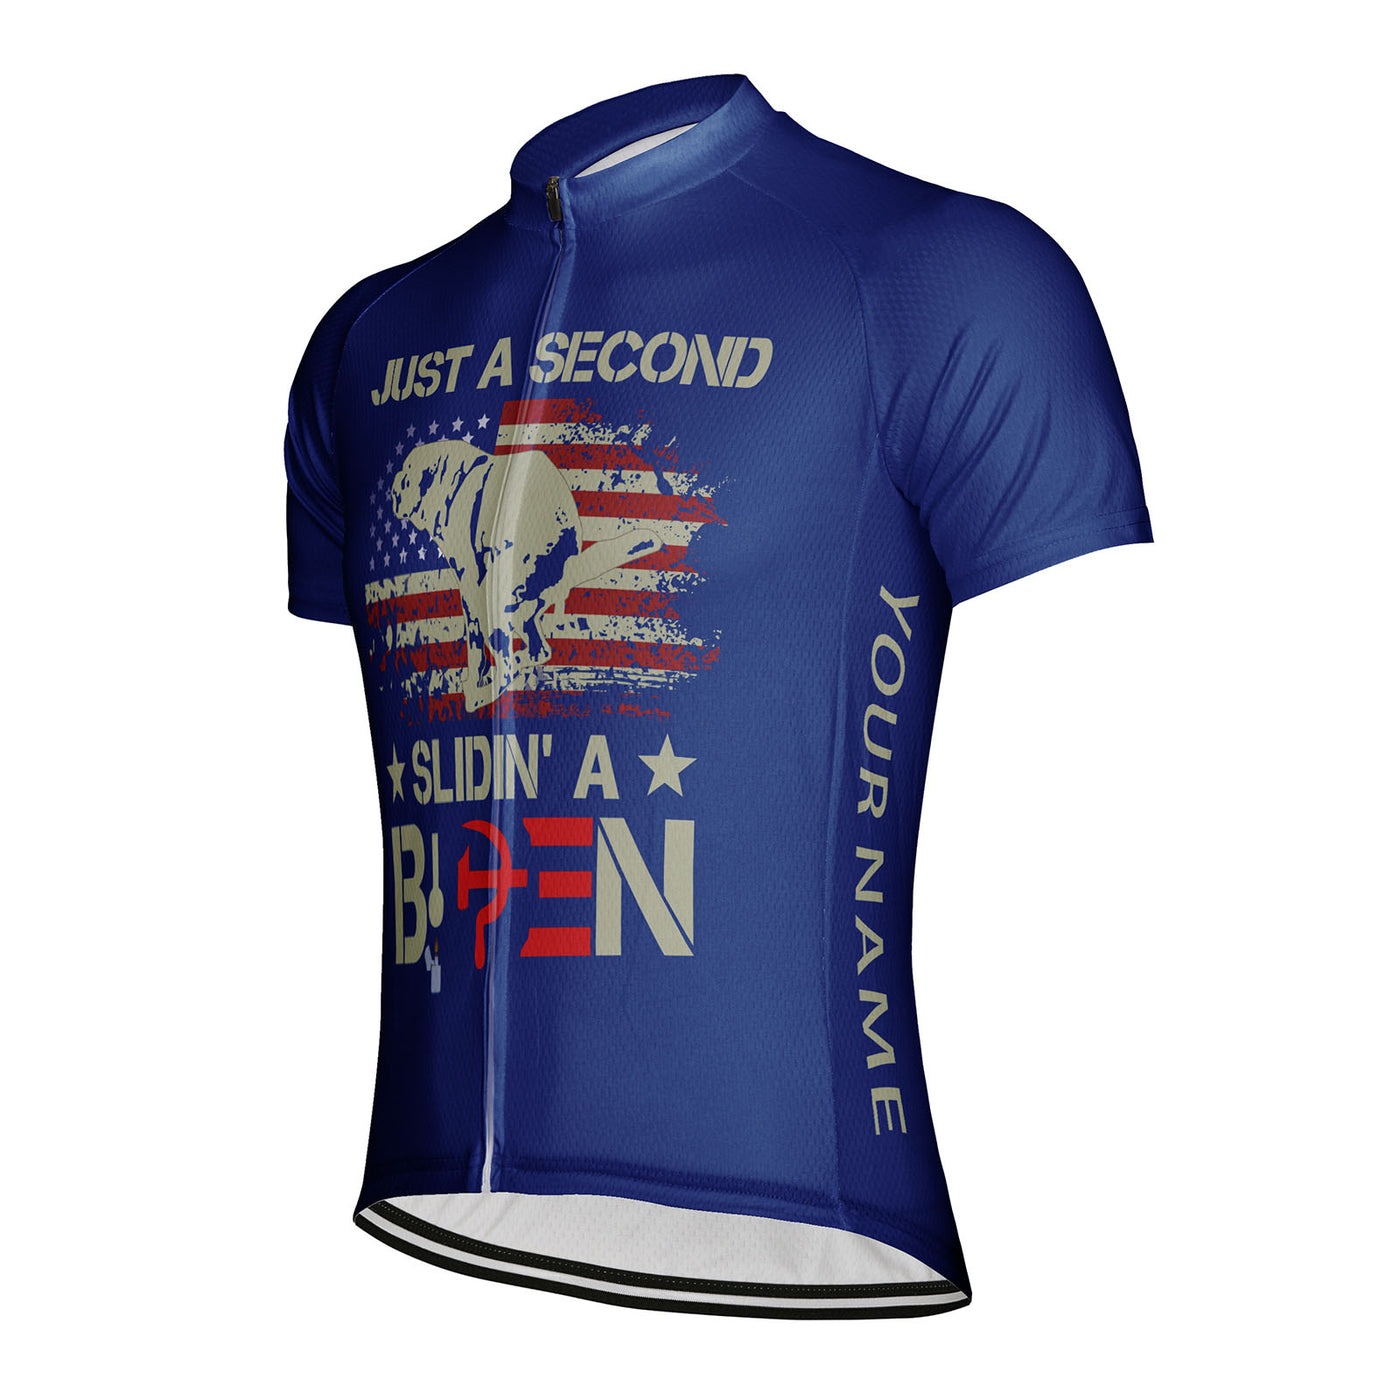 Customized Just A Second Slidin' A Biden Men's Cycling Jersey Short Sleeve